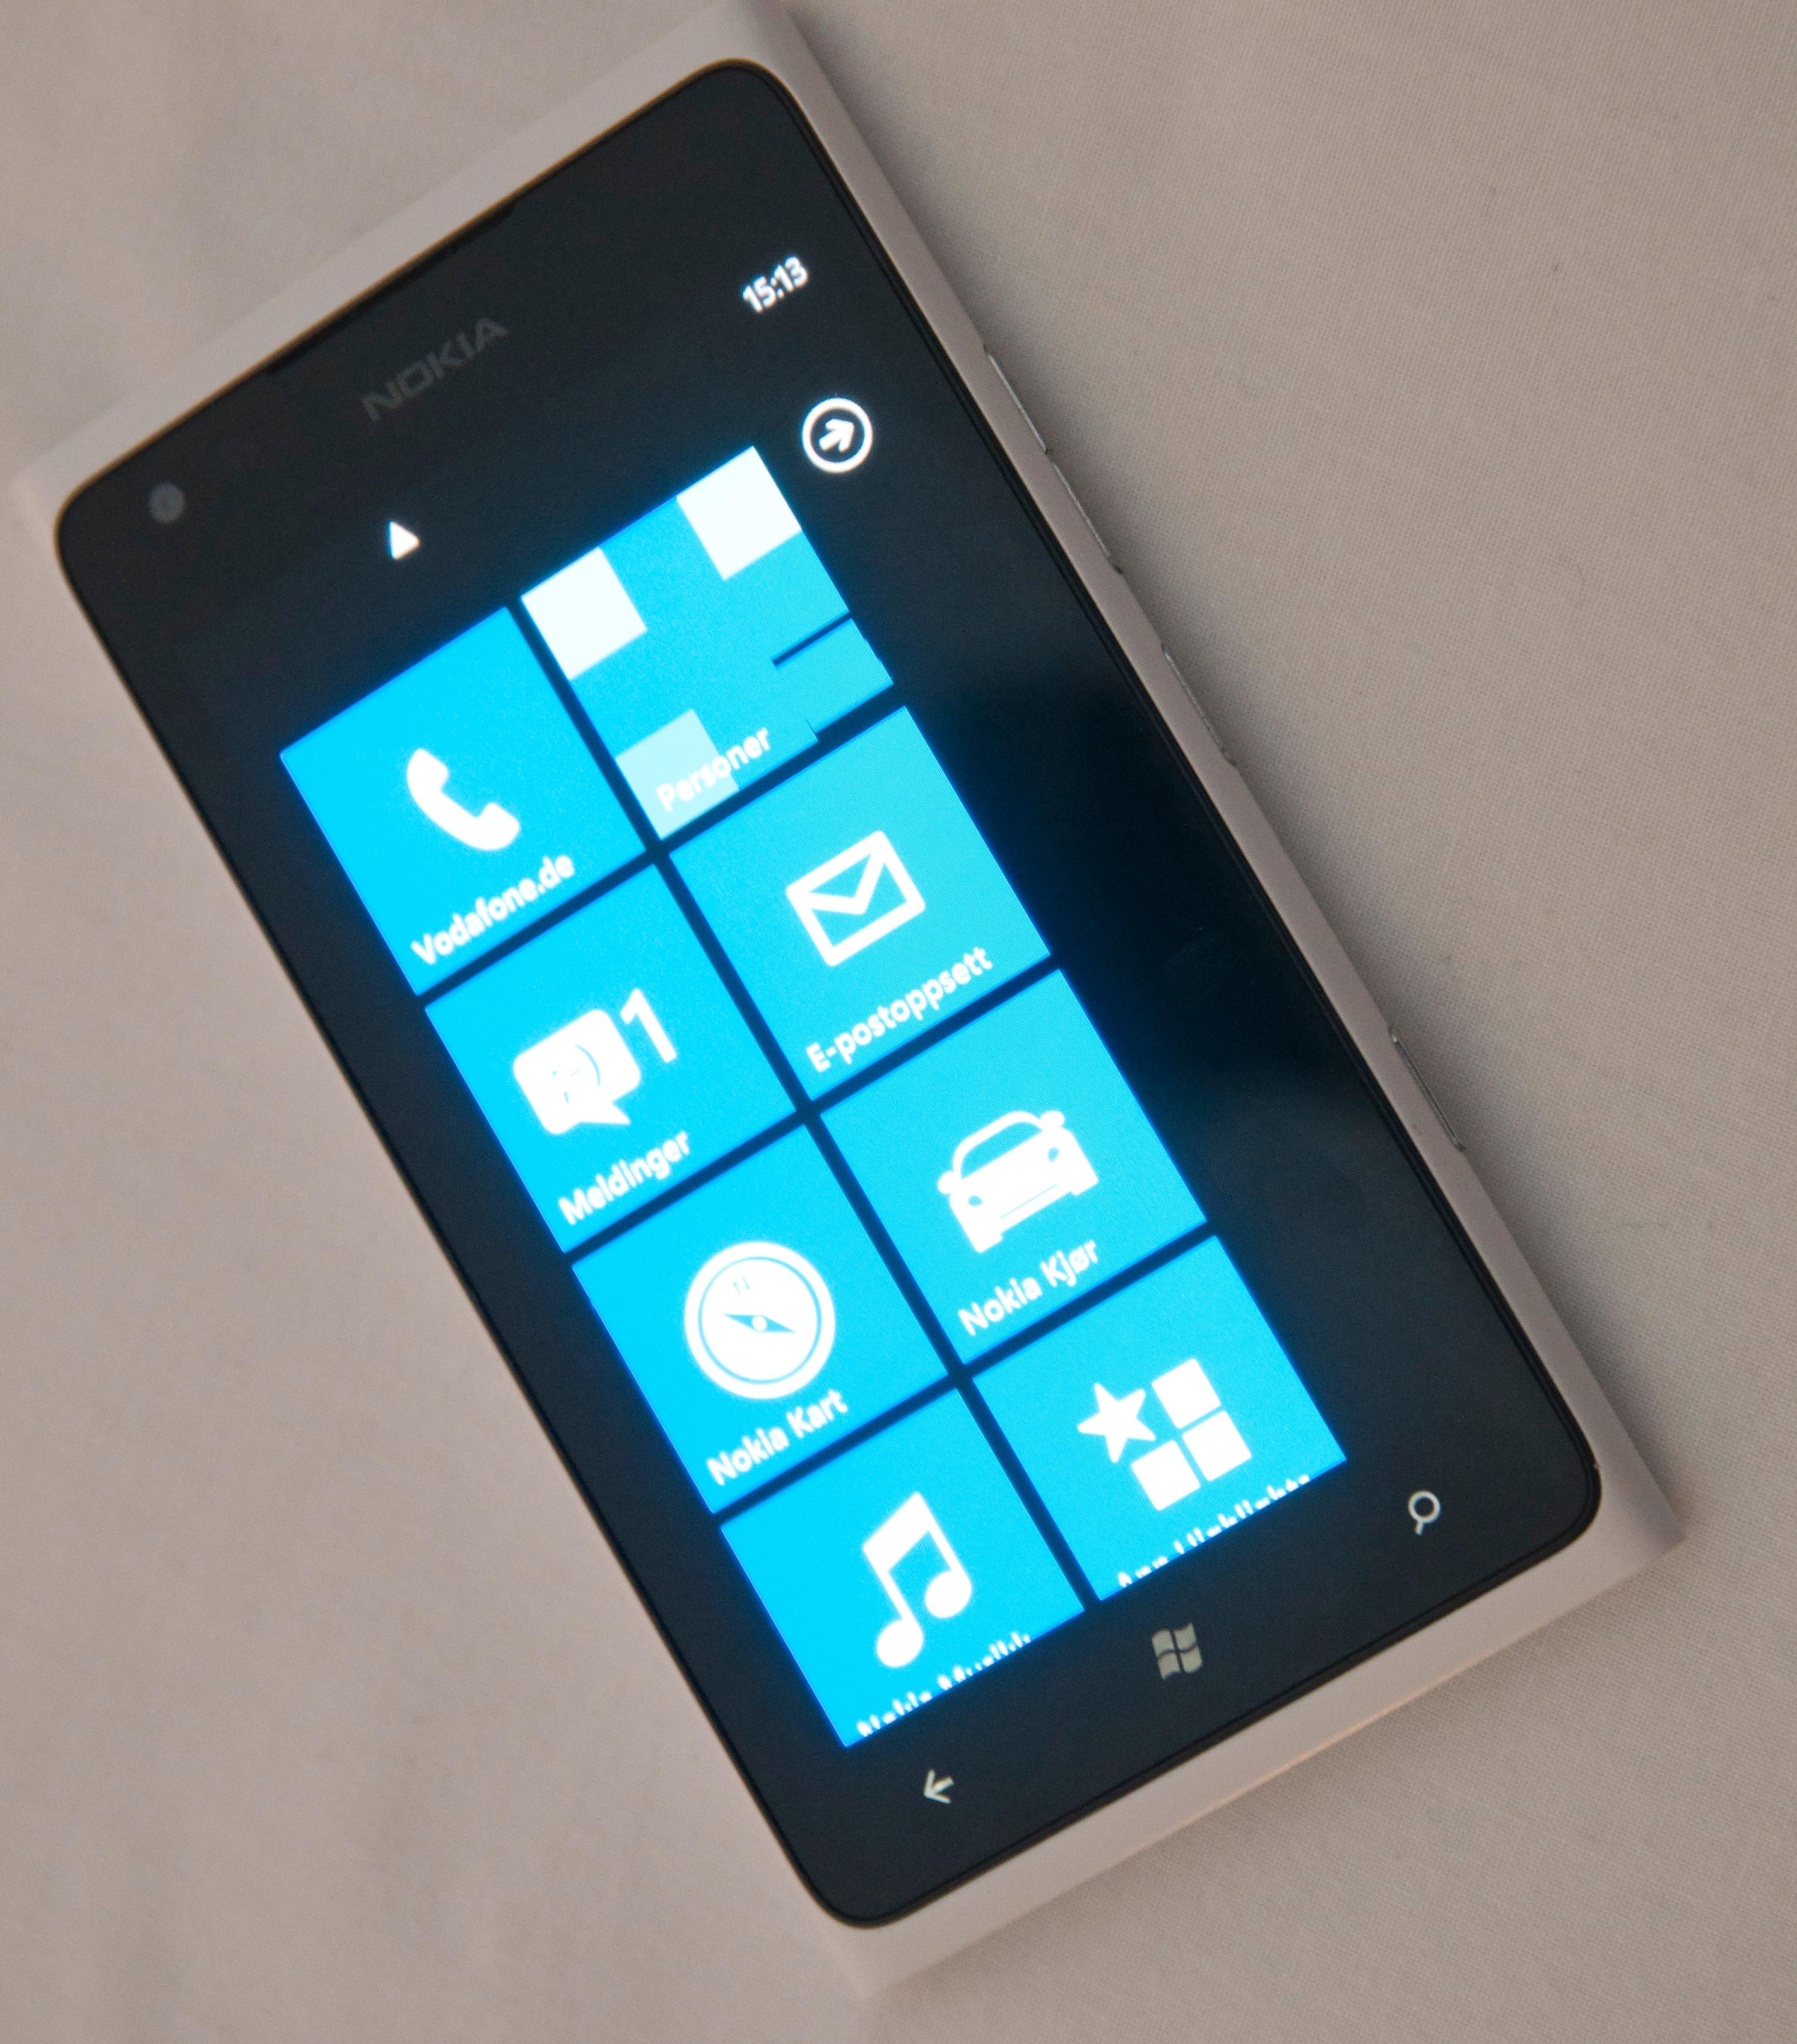 Likheten til forgjengeren, Lumia 900, er slående ...